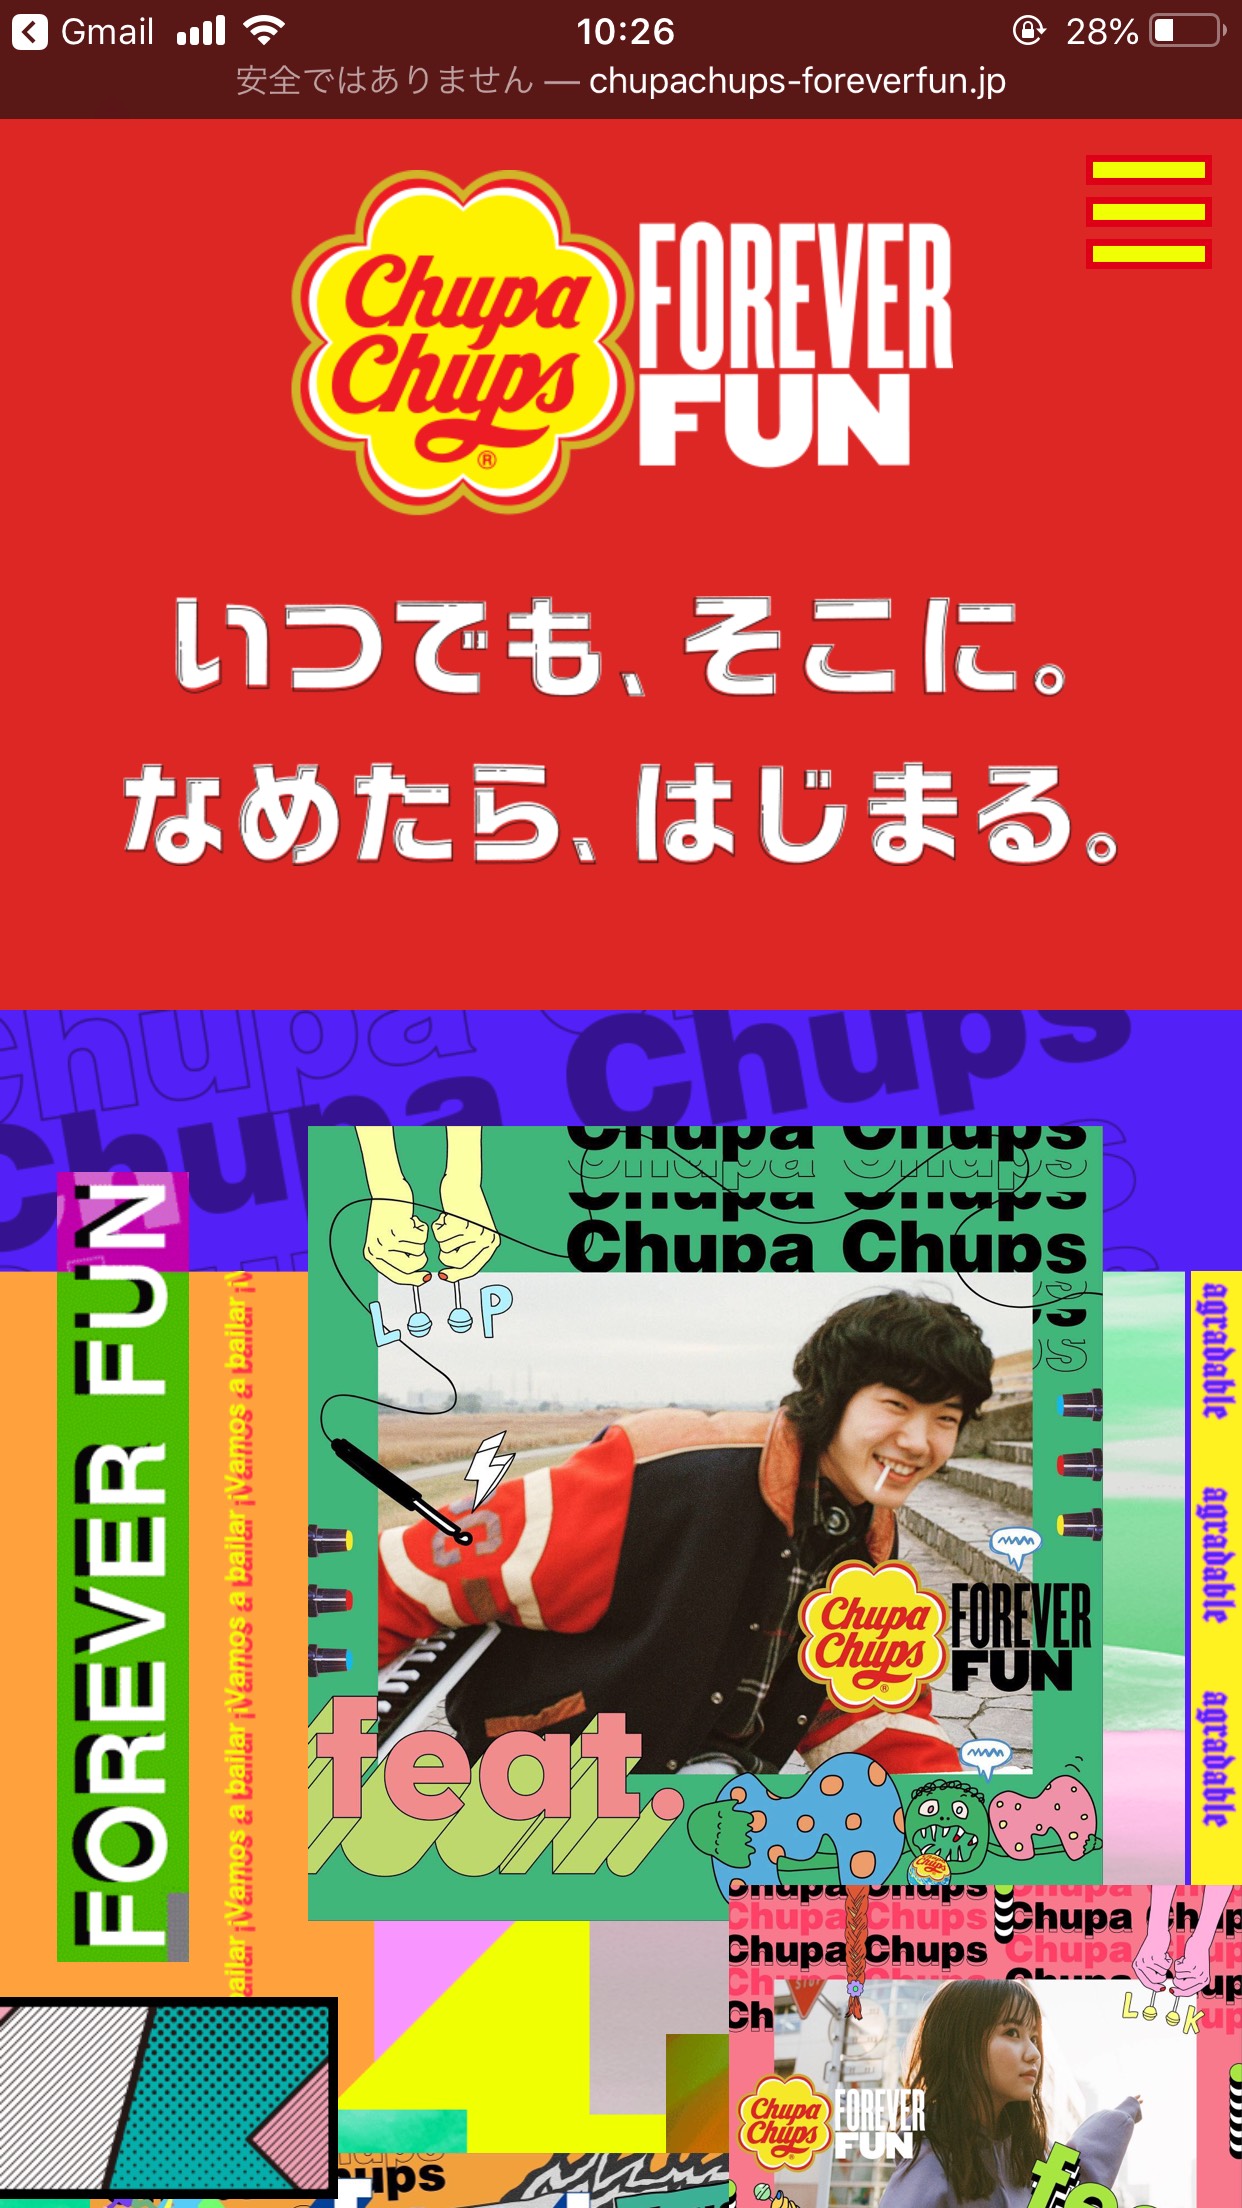 FOREVER FUN | Chupa Chups